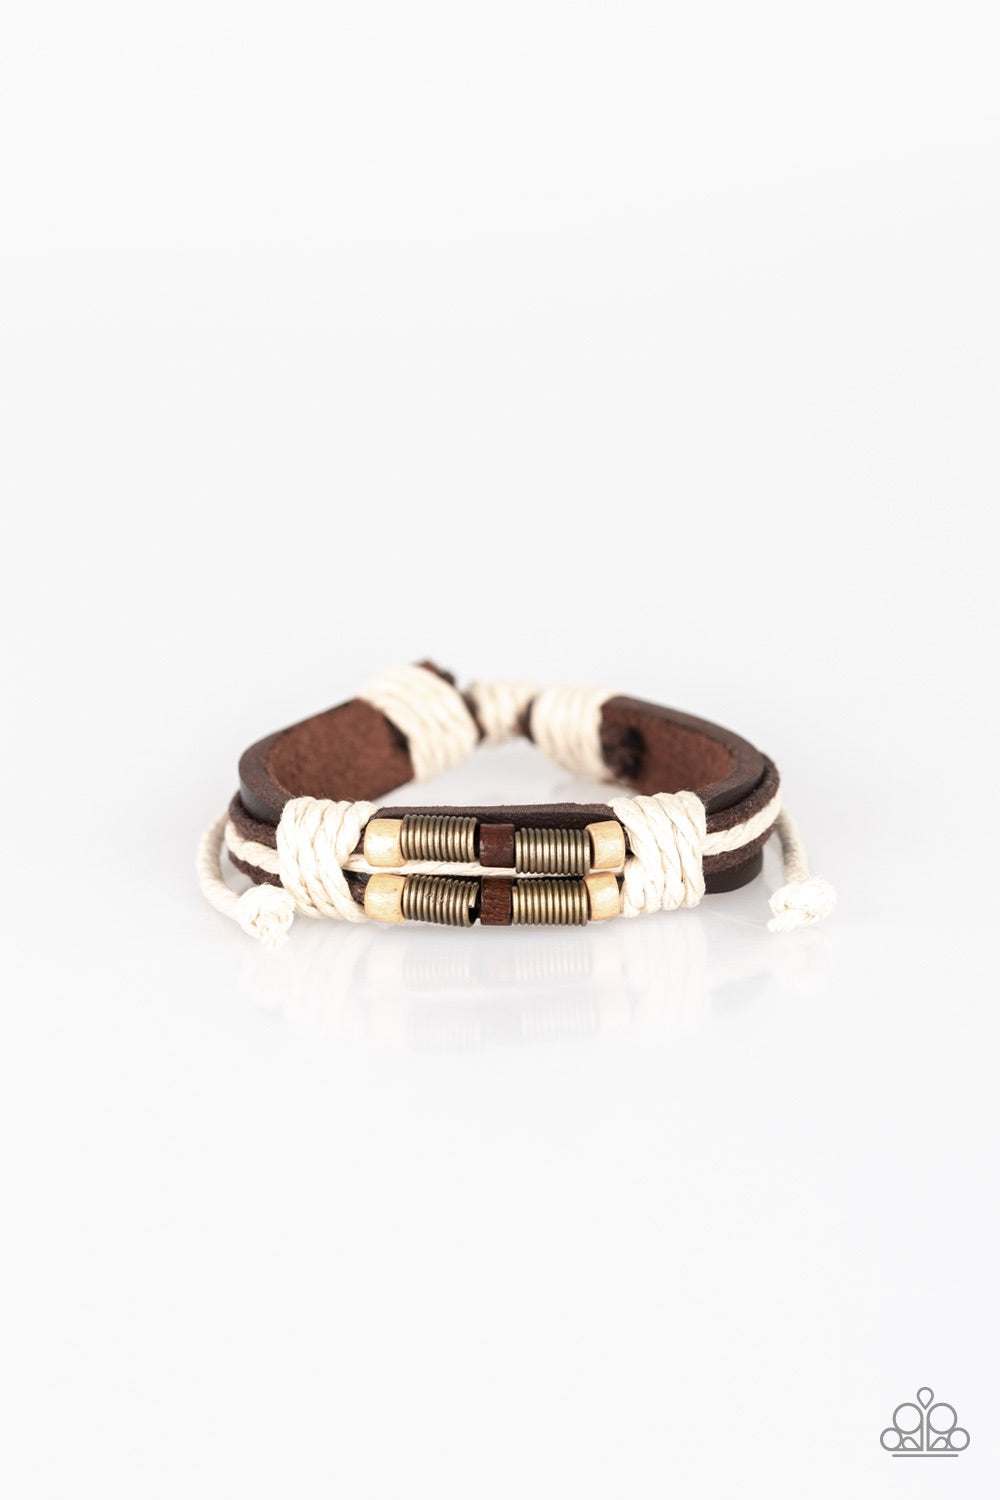 Wonderfully Woodsy Brown-Urban Bracelet